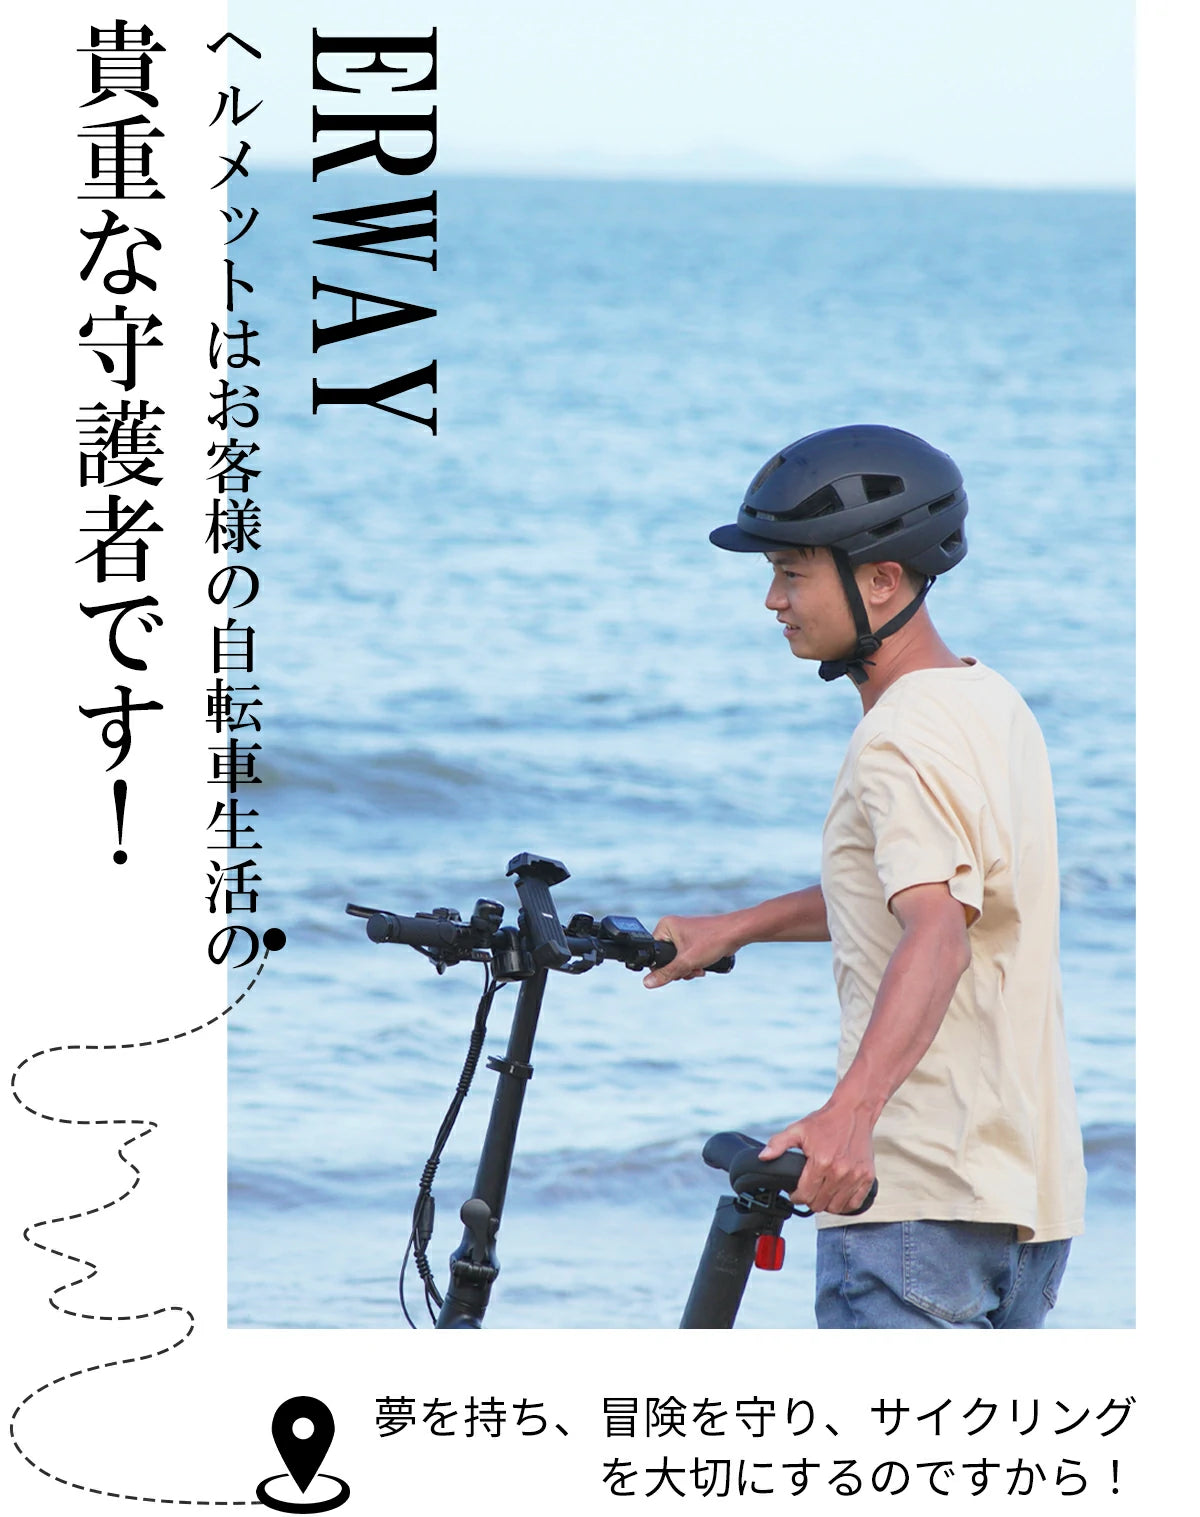 ERWAYヘルメットはお客様の自転車生活の
貴重な守護者です！夢を持ち、冒険を守り、サイクリング
を大切にするのですから!